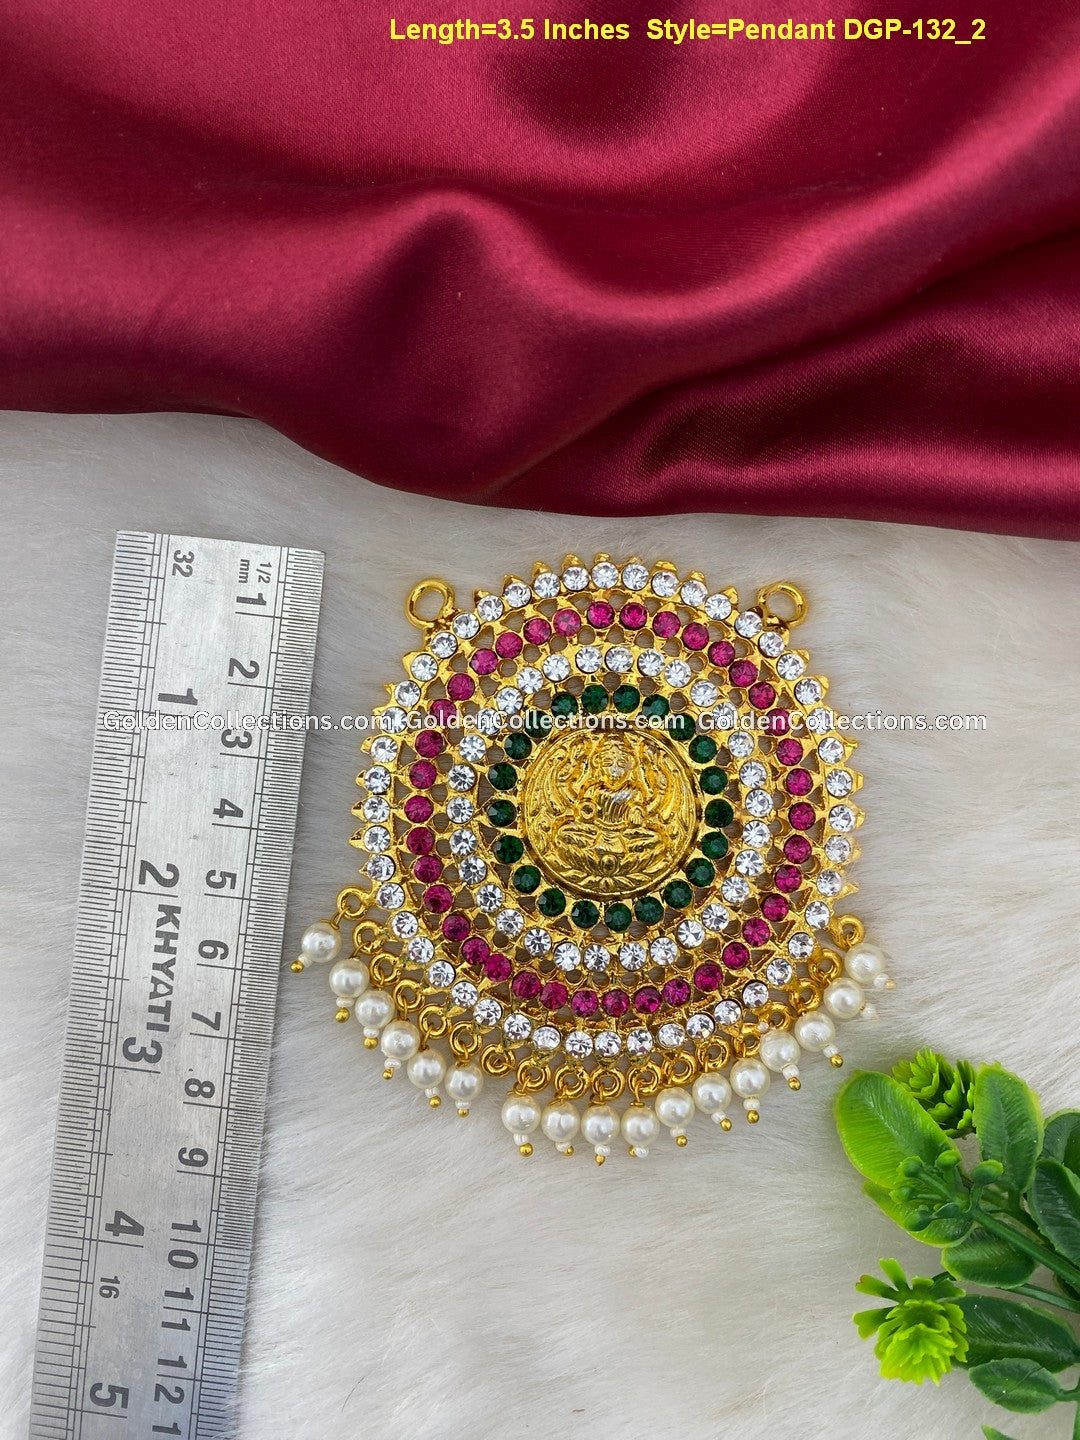 Deity Locket Necklace - Divine Adornments for Devotion DGP-132 2